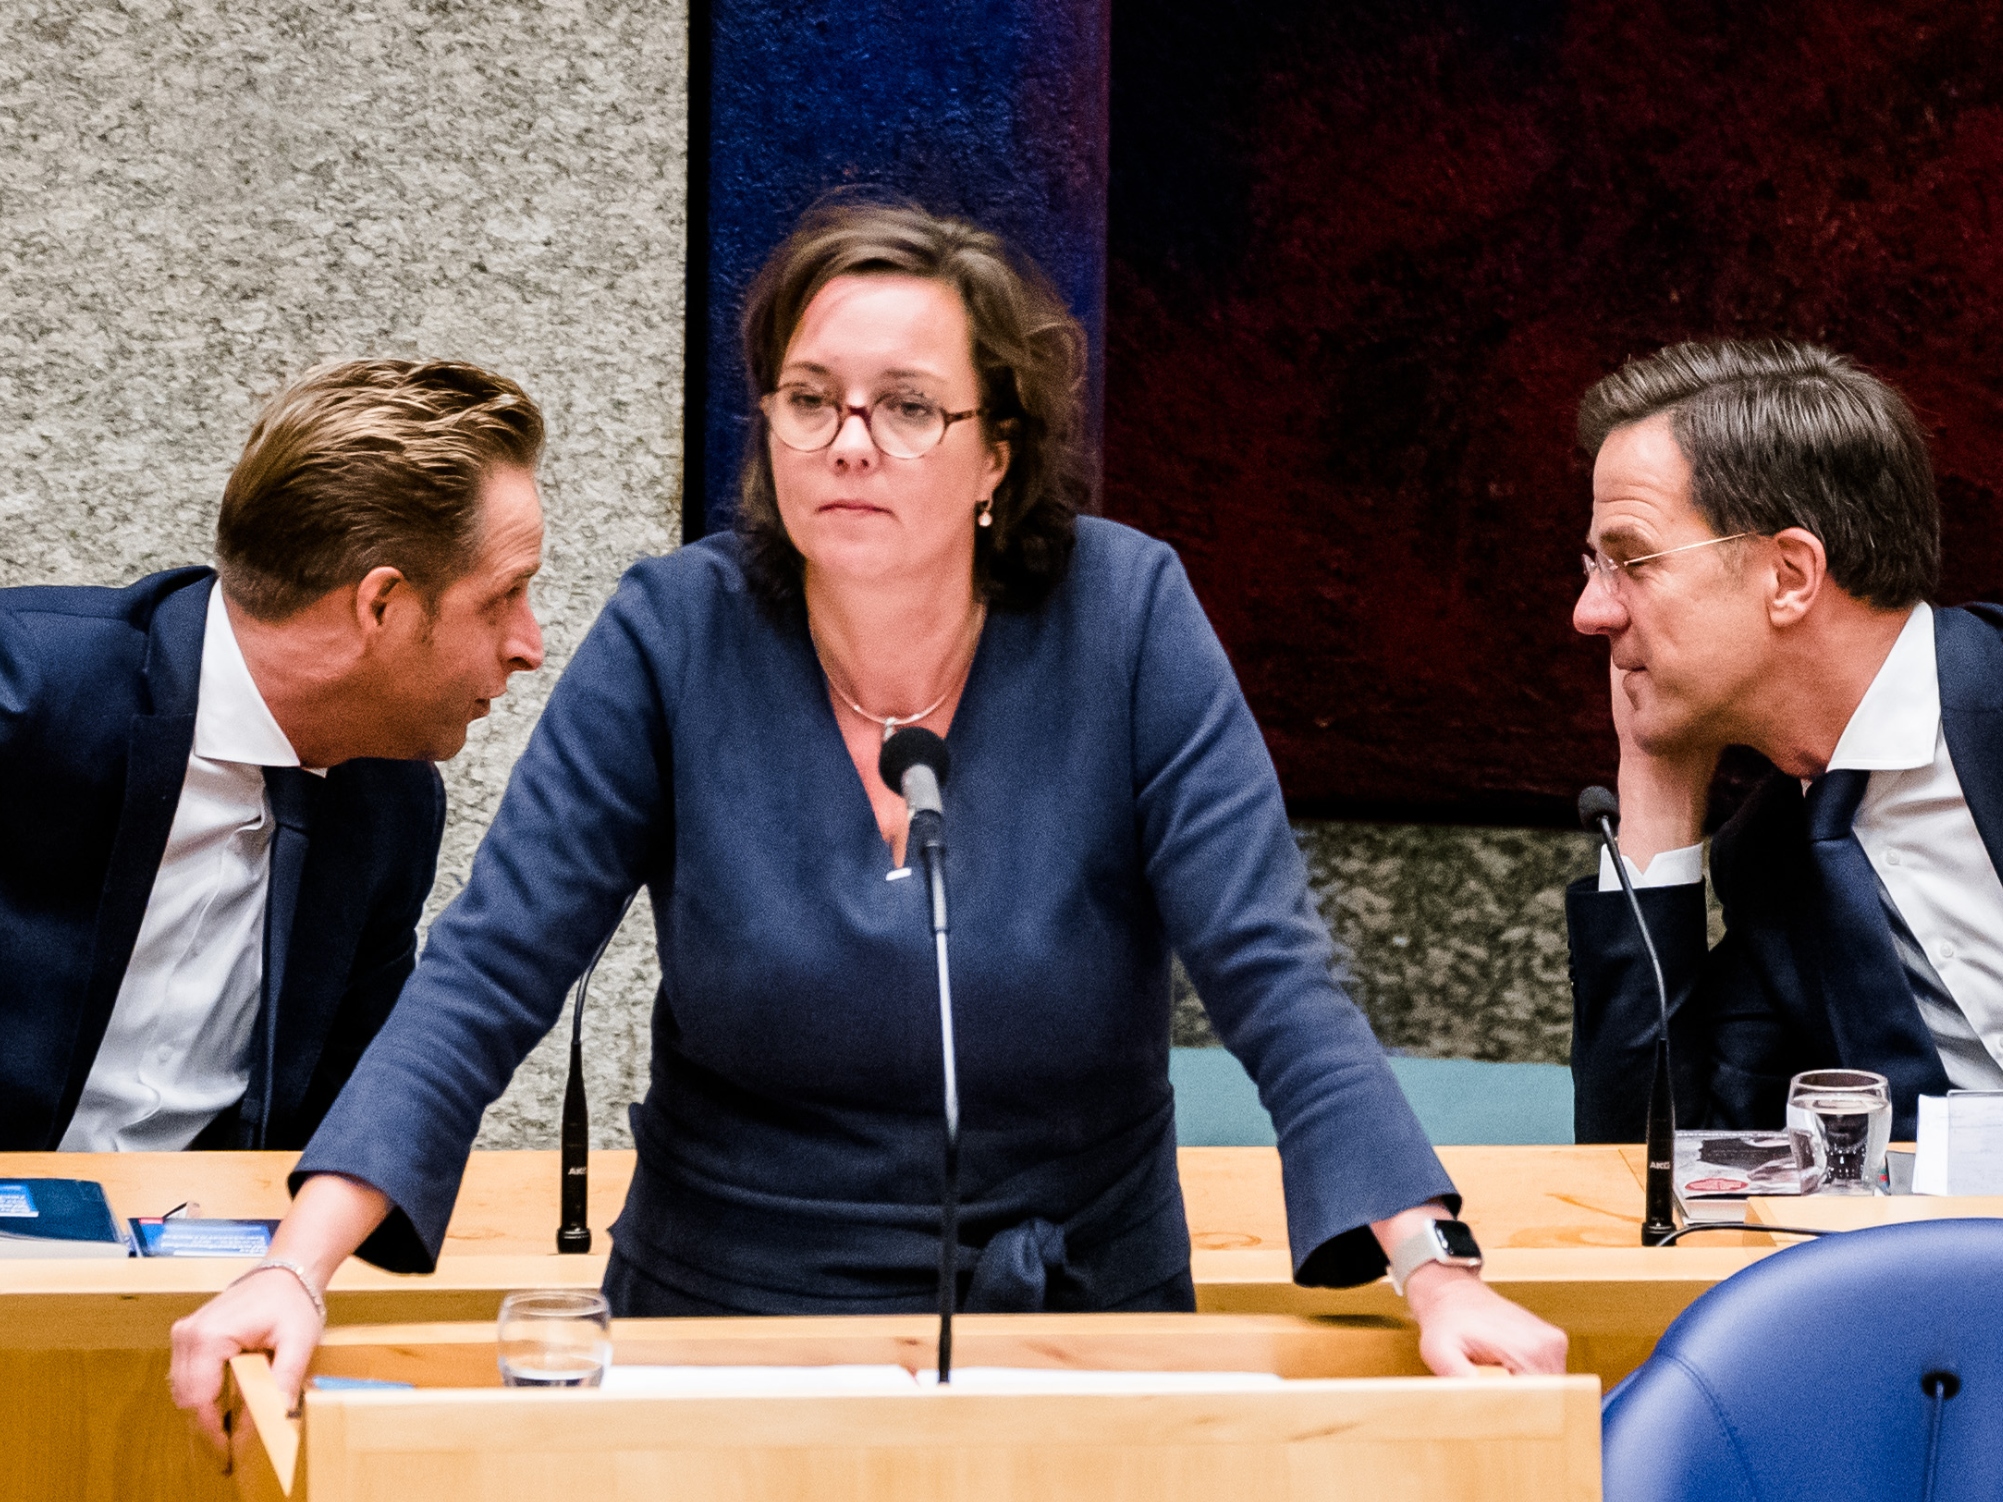 Minister Tamara van Ark voor Medische Zorg (VVD), Premier Mark Rutte en Minister Hugo de Jonge van Volksgezondheid, Welzijn en Sport (CDA) tijdens het plenair debat in de Tweede Kamer over de over de ontwikkelingen rond de corona-uitbraak.